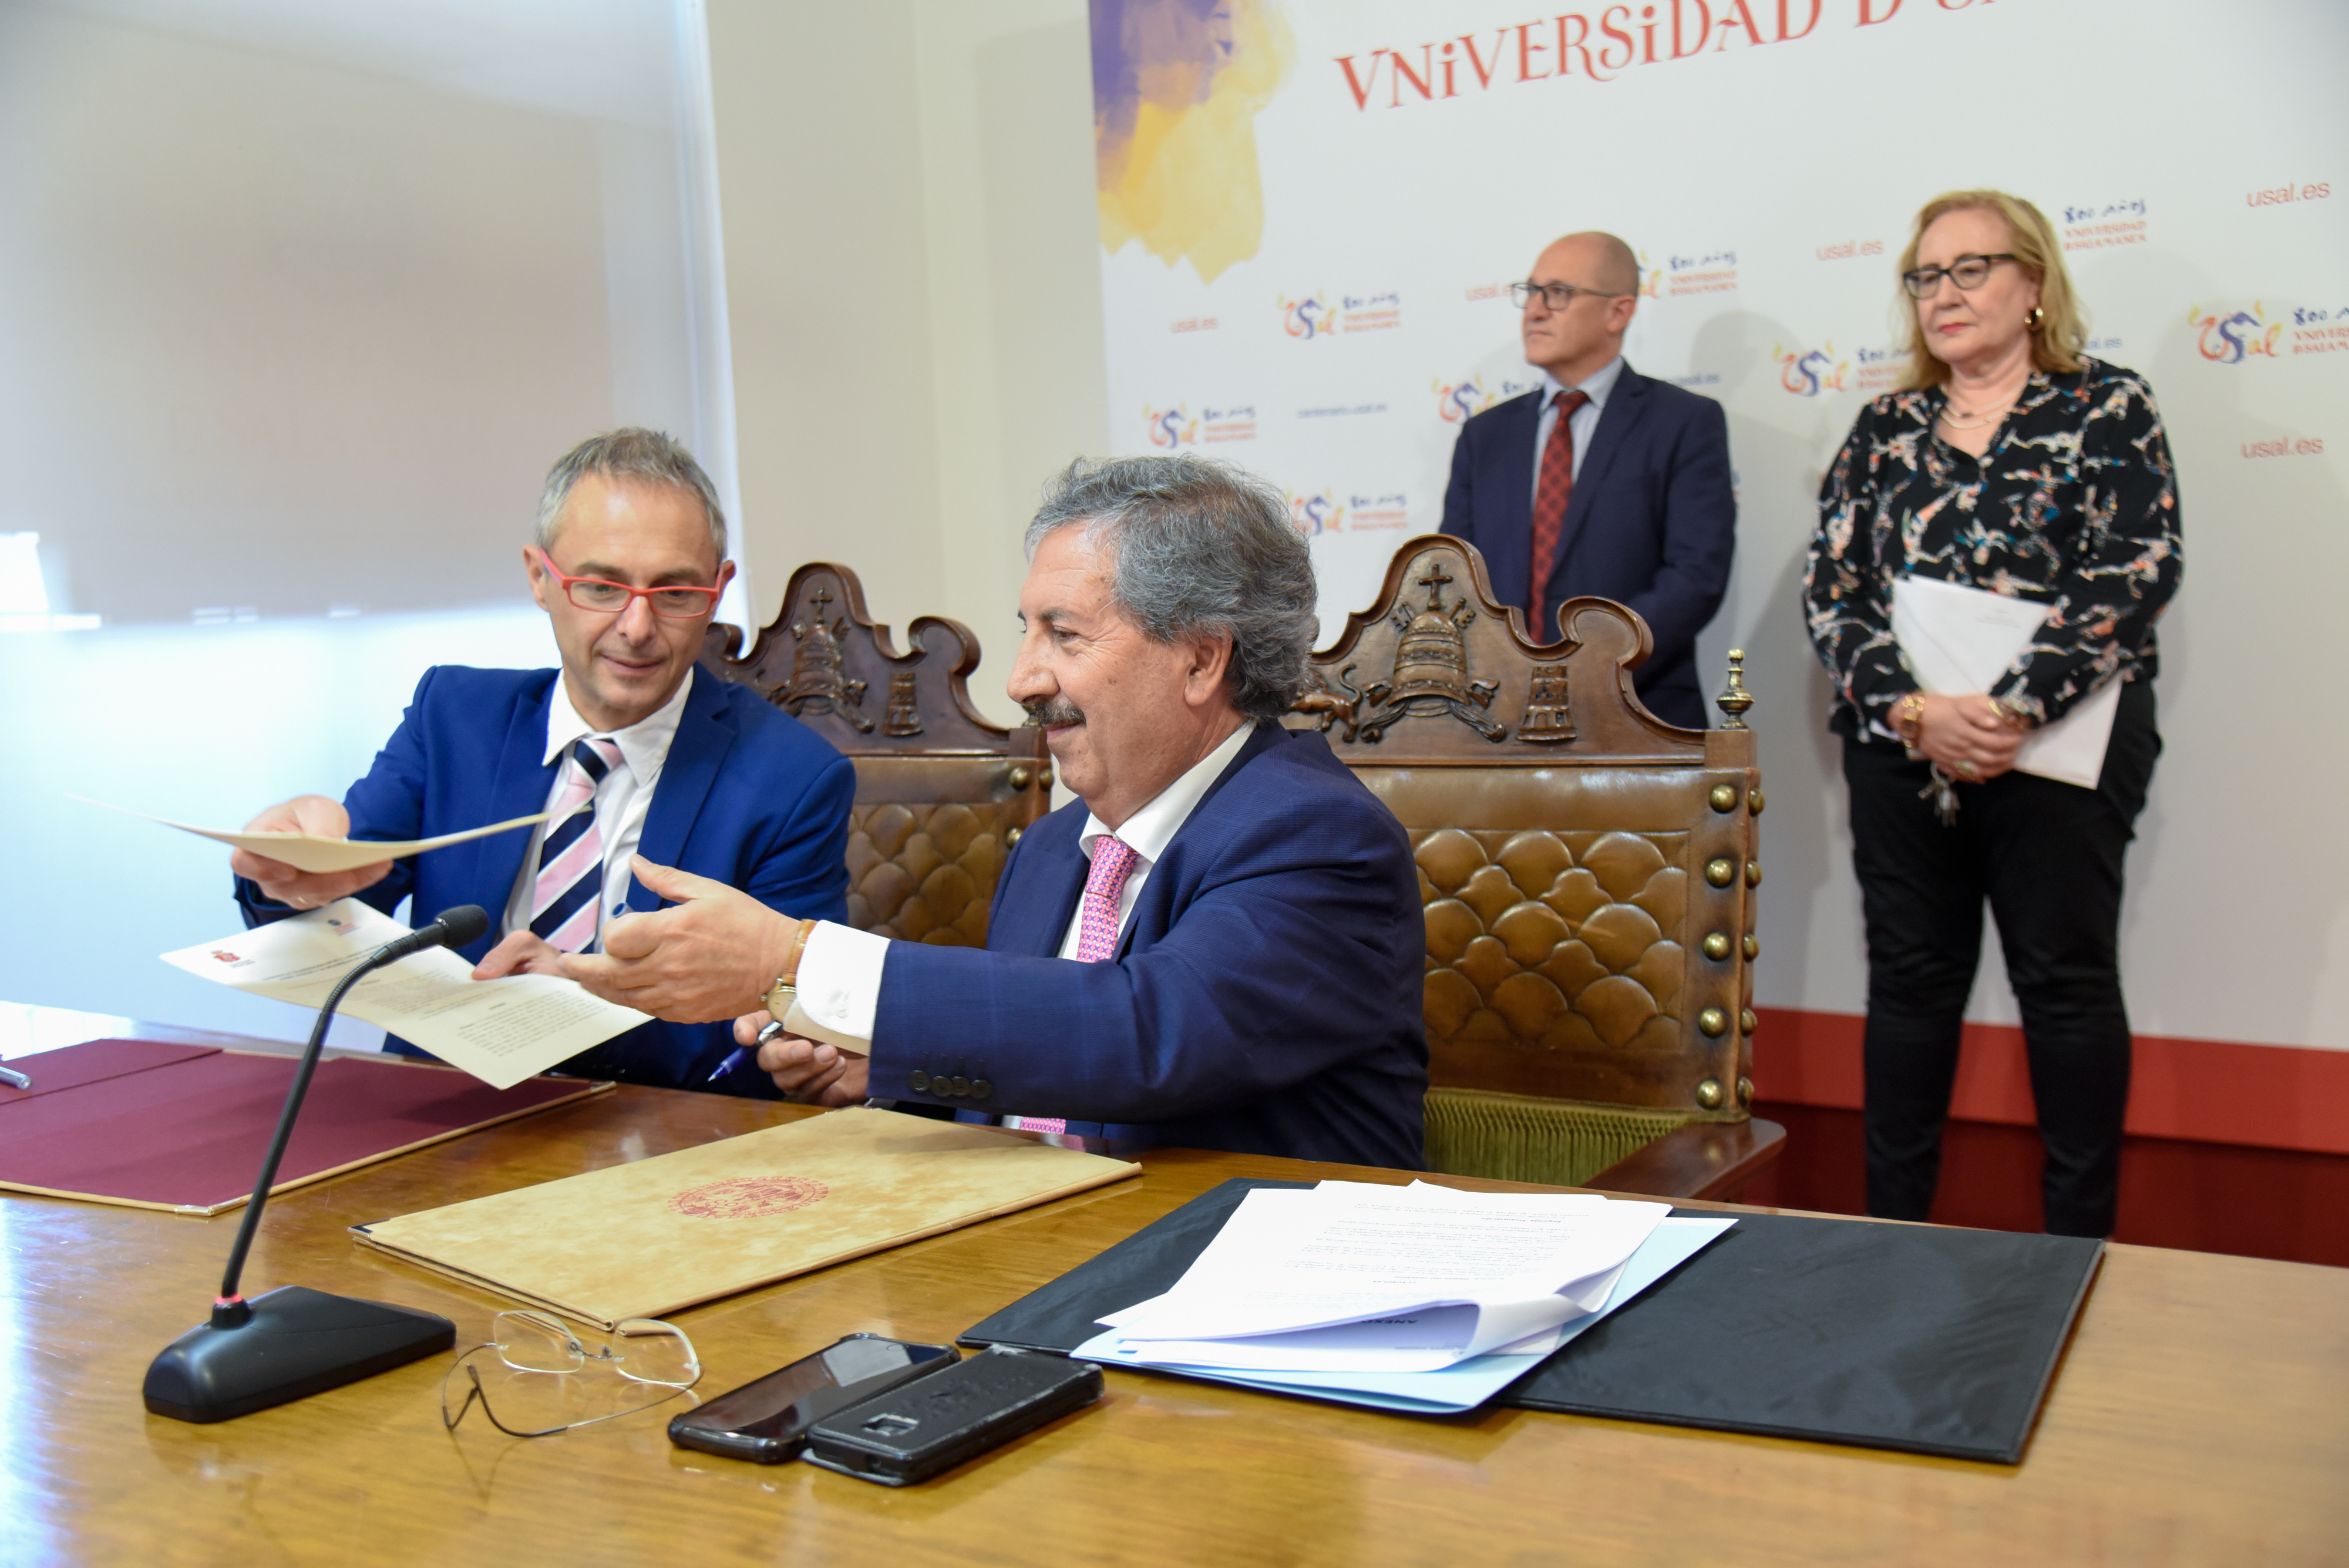 La Universidad de Salamanca y el Consejo General del Poder Judicial firman un convenio para impulsar la investigación y la docencia